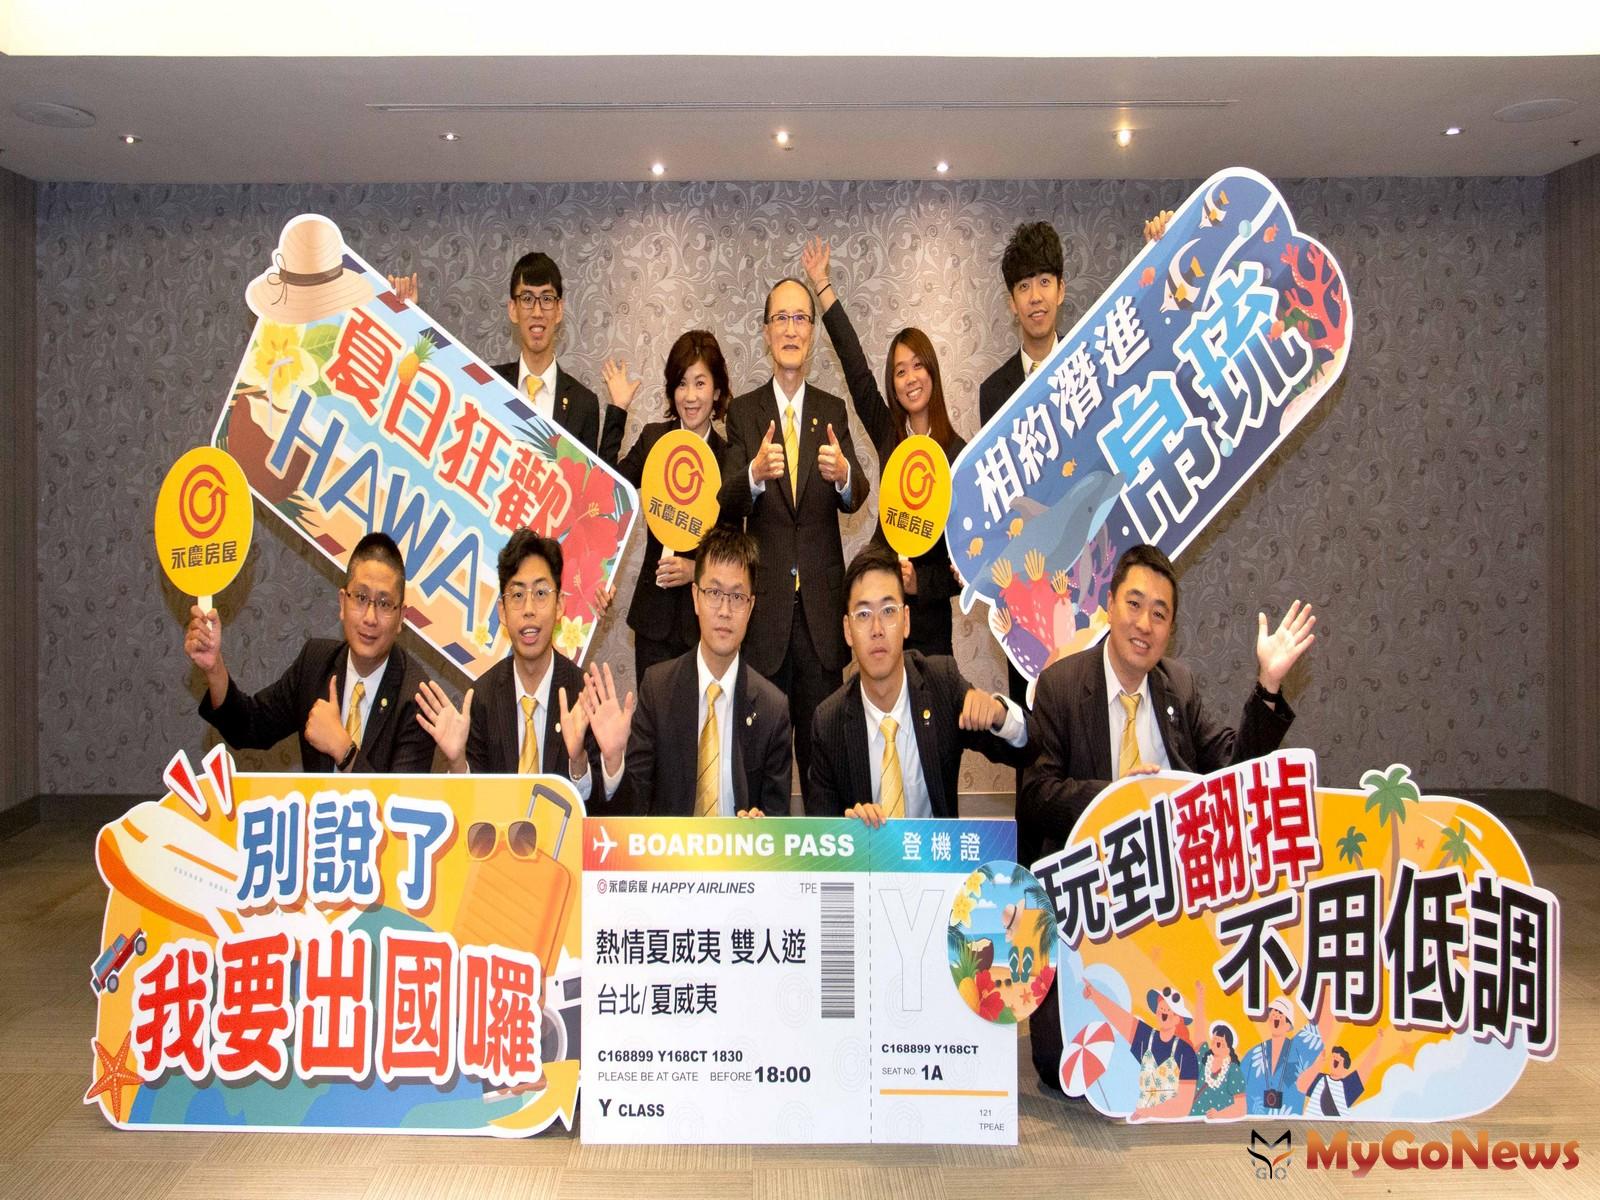 永慶房屋海外旅遊獎勵 獲獎人數超過600人